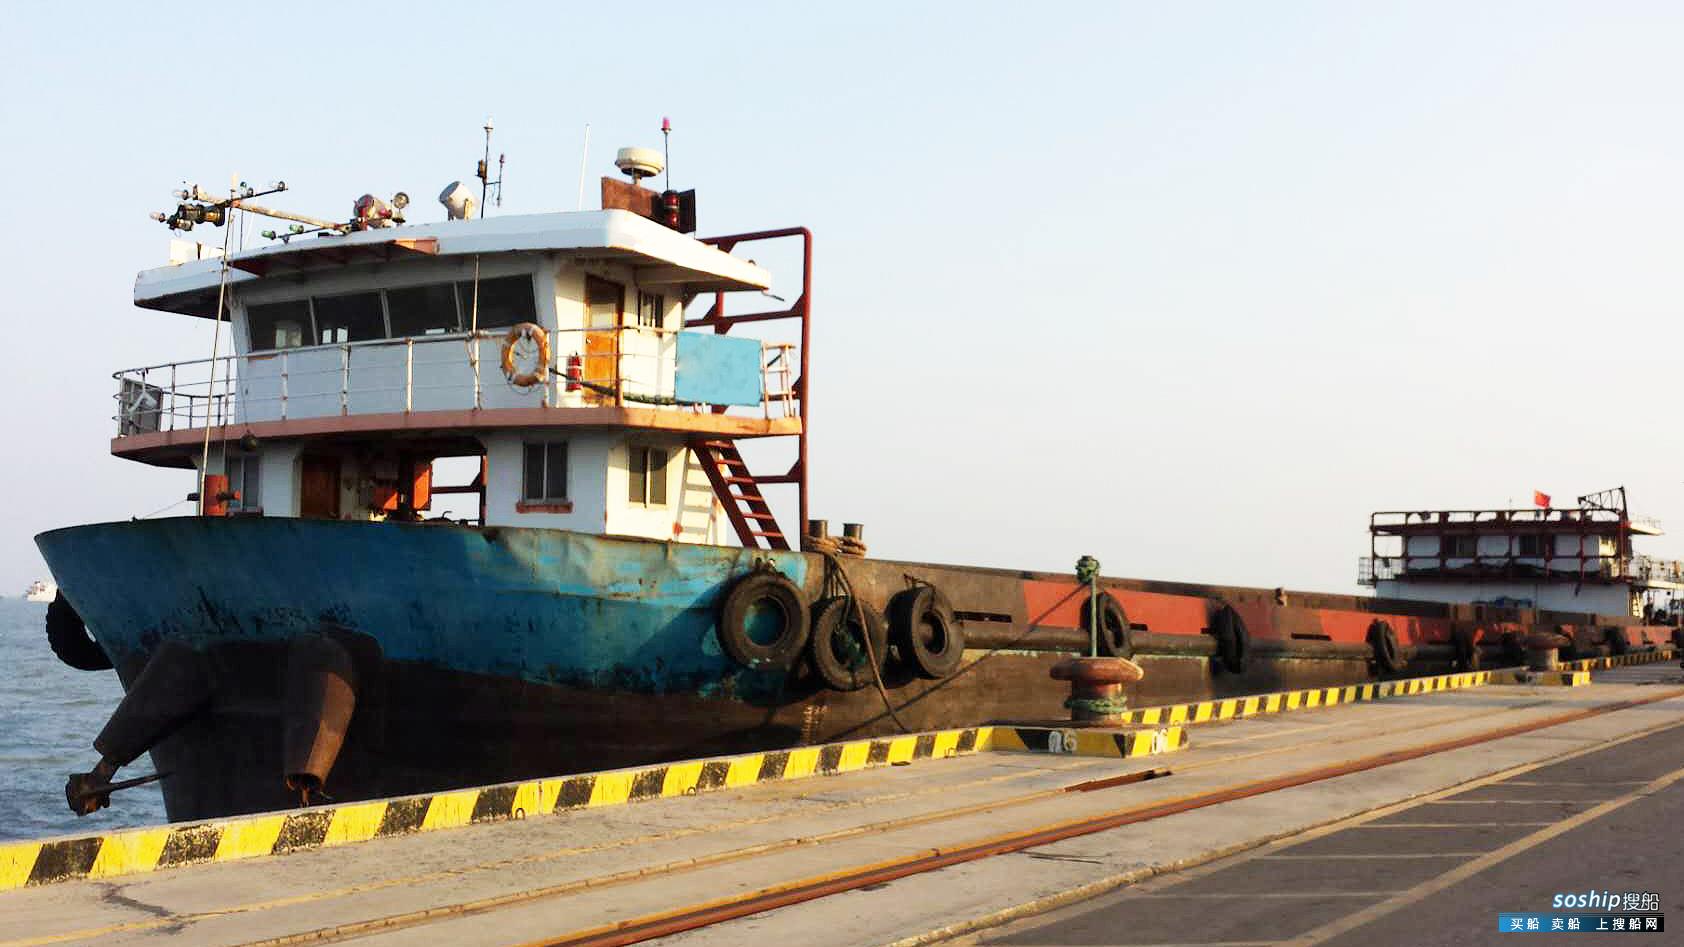 目前最大的集装箱船 出售2467吨集装箱船